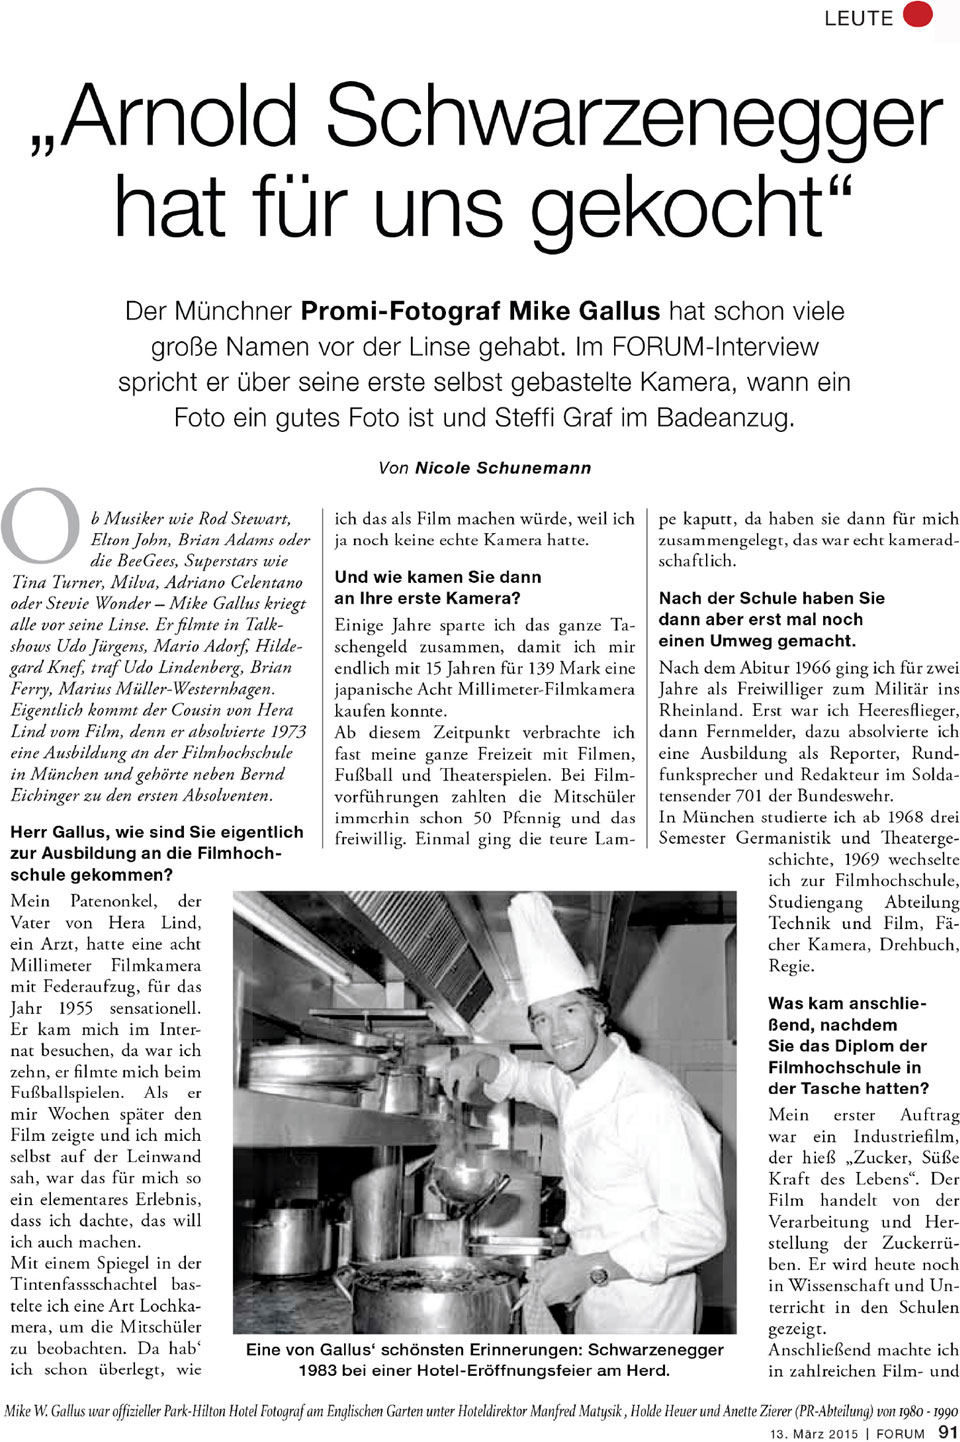 Seite 2 vom Interview in "Forum - Das Wochenmagazin“ mit dem Münchner Promifotograf Mike Gallus